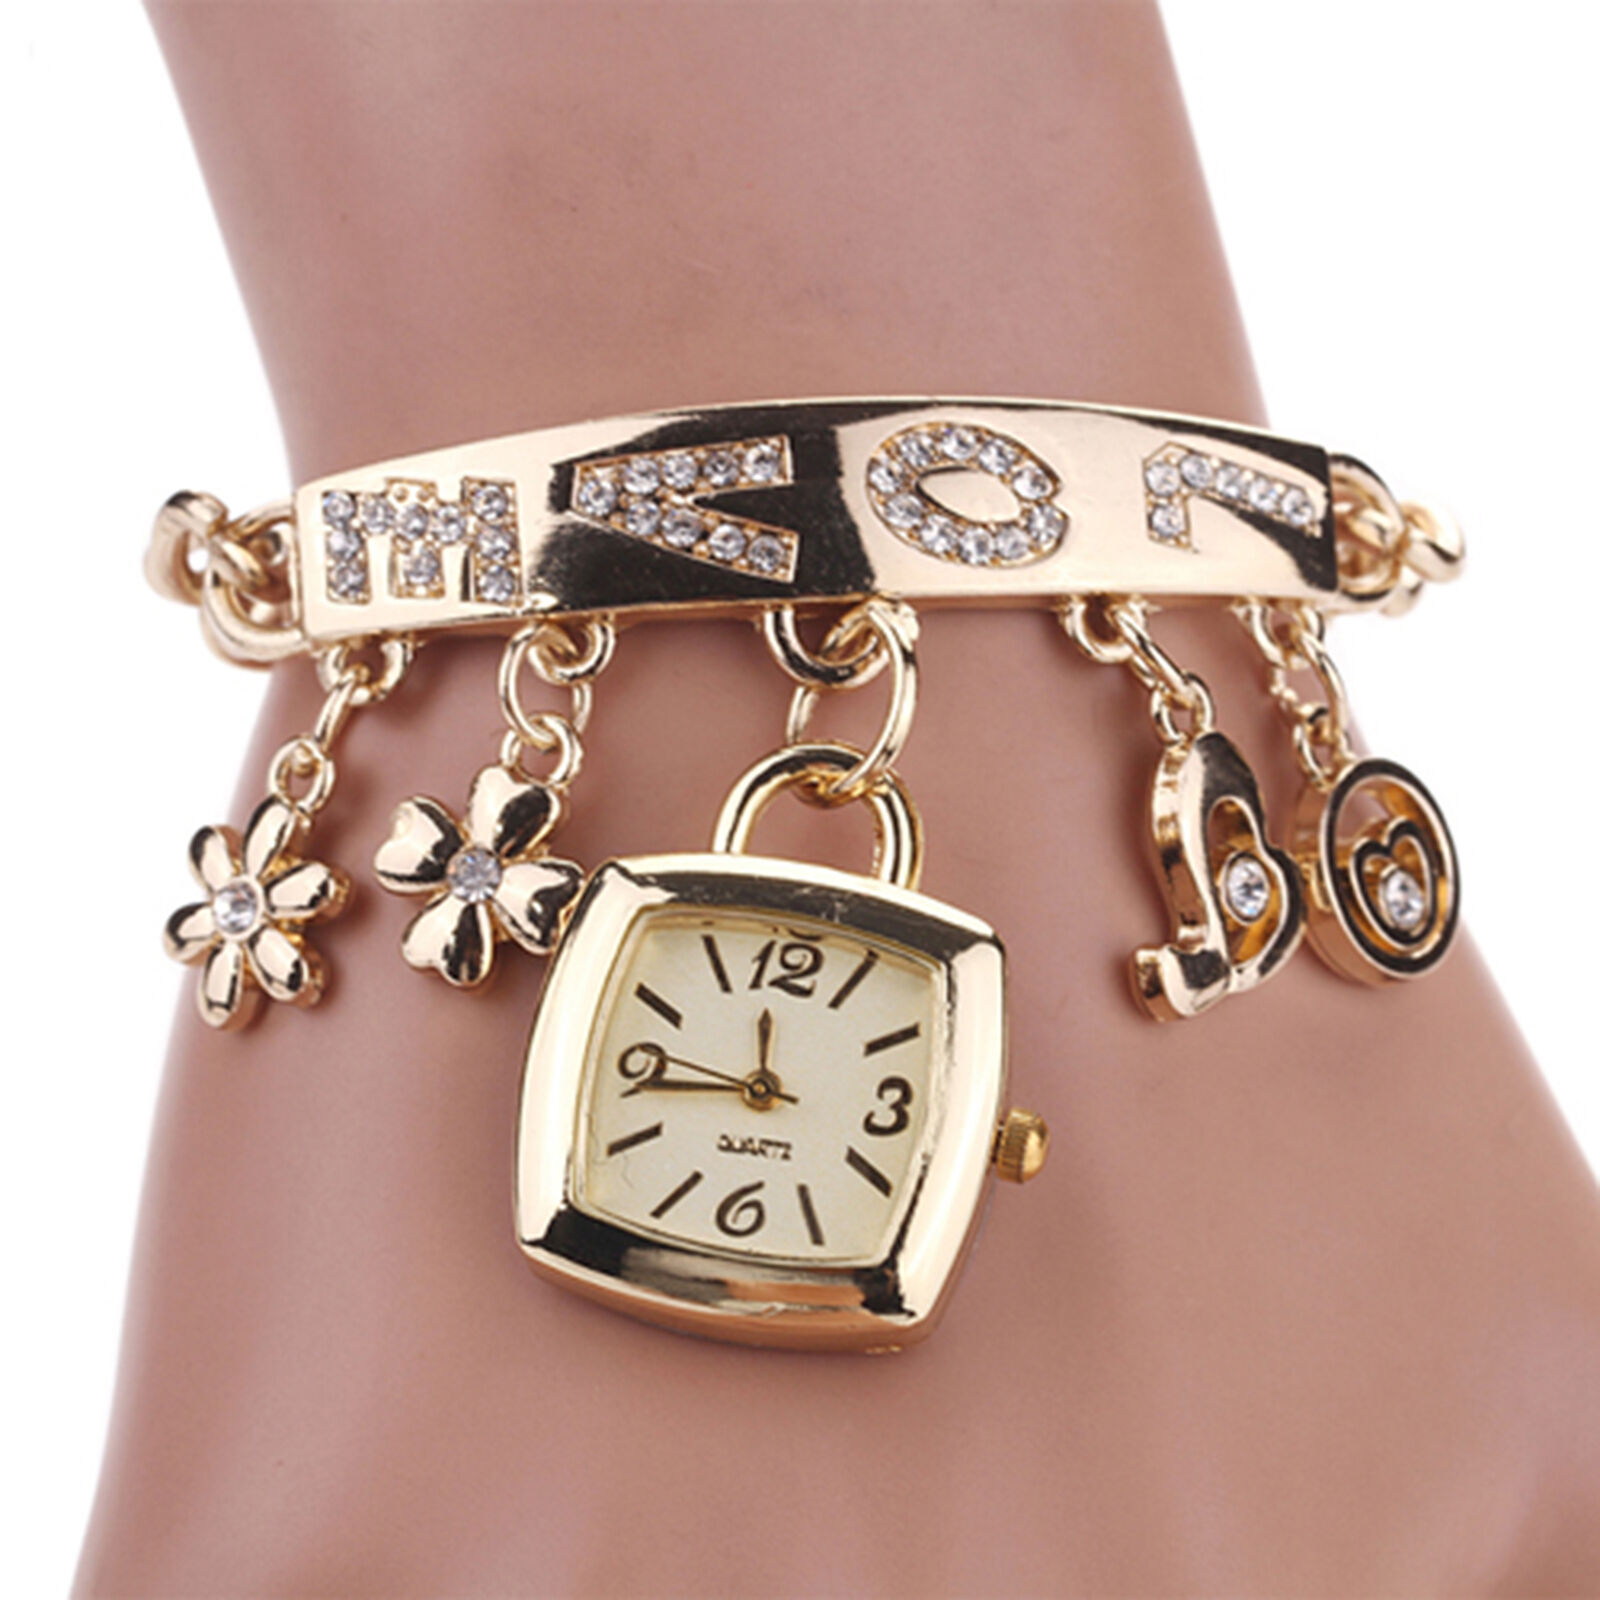 Jewelry Wristwatch Wear-resistant Shiny Surface Stylish Quartz Bracelet Watch Unbranded - фотография #2